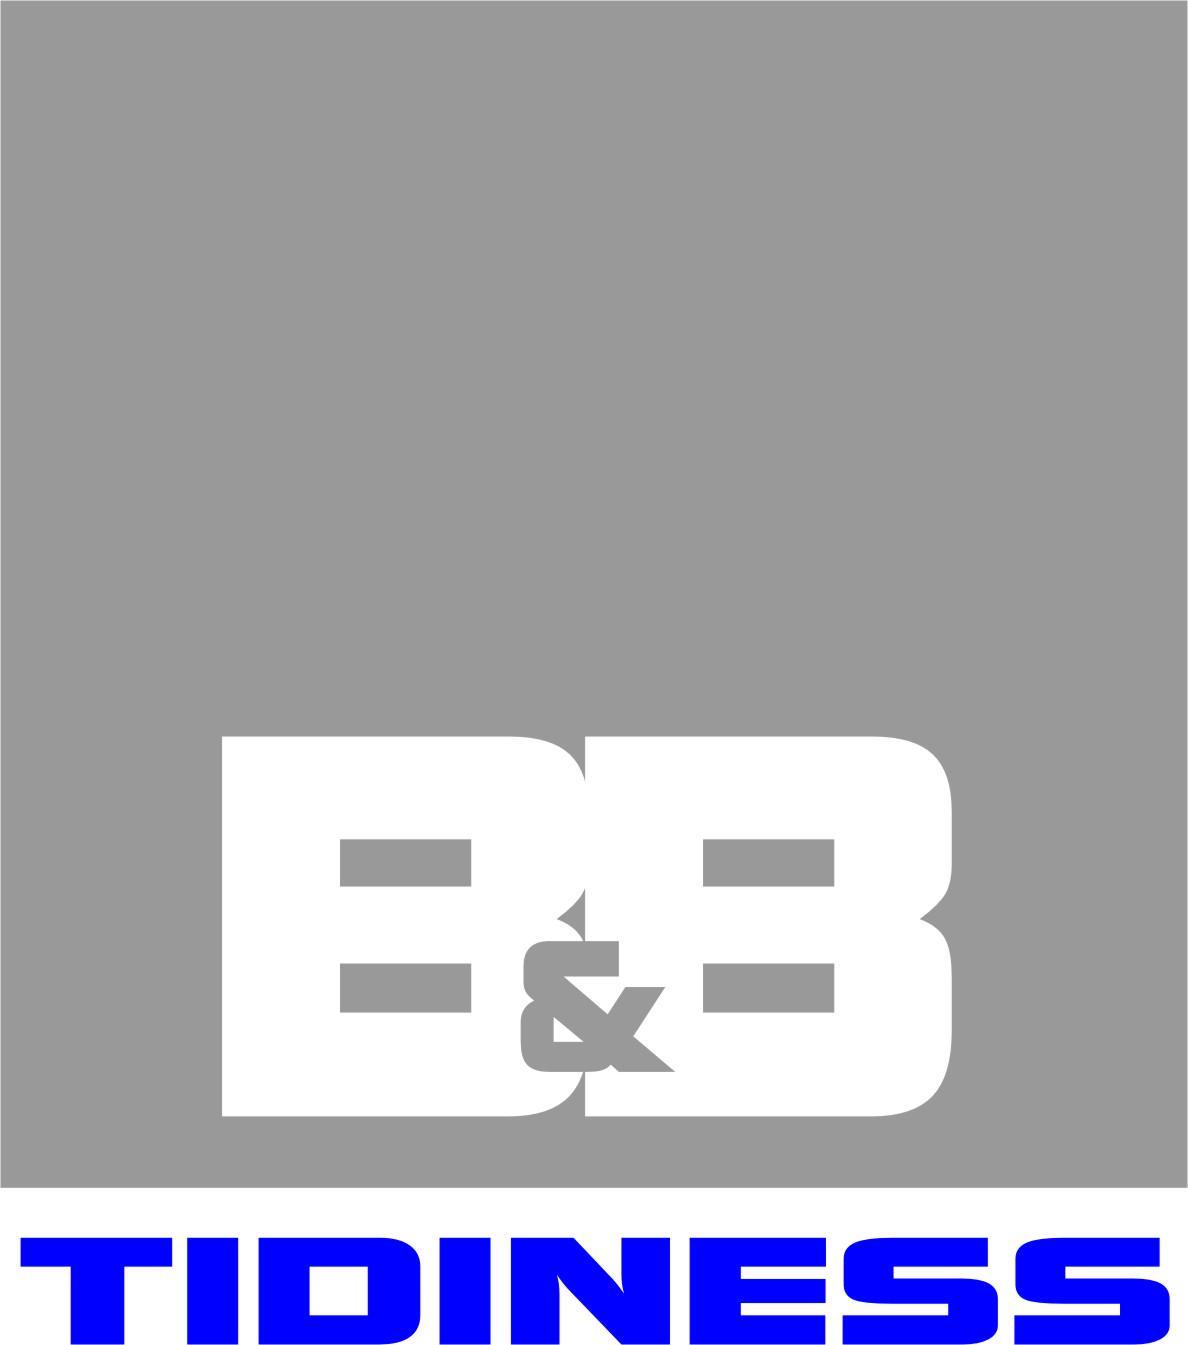 B&B TIDINESS BULDING, Bochnia, małopolskie